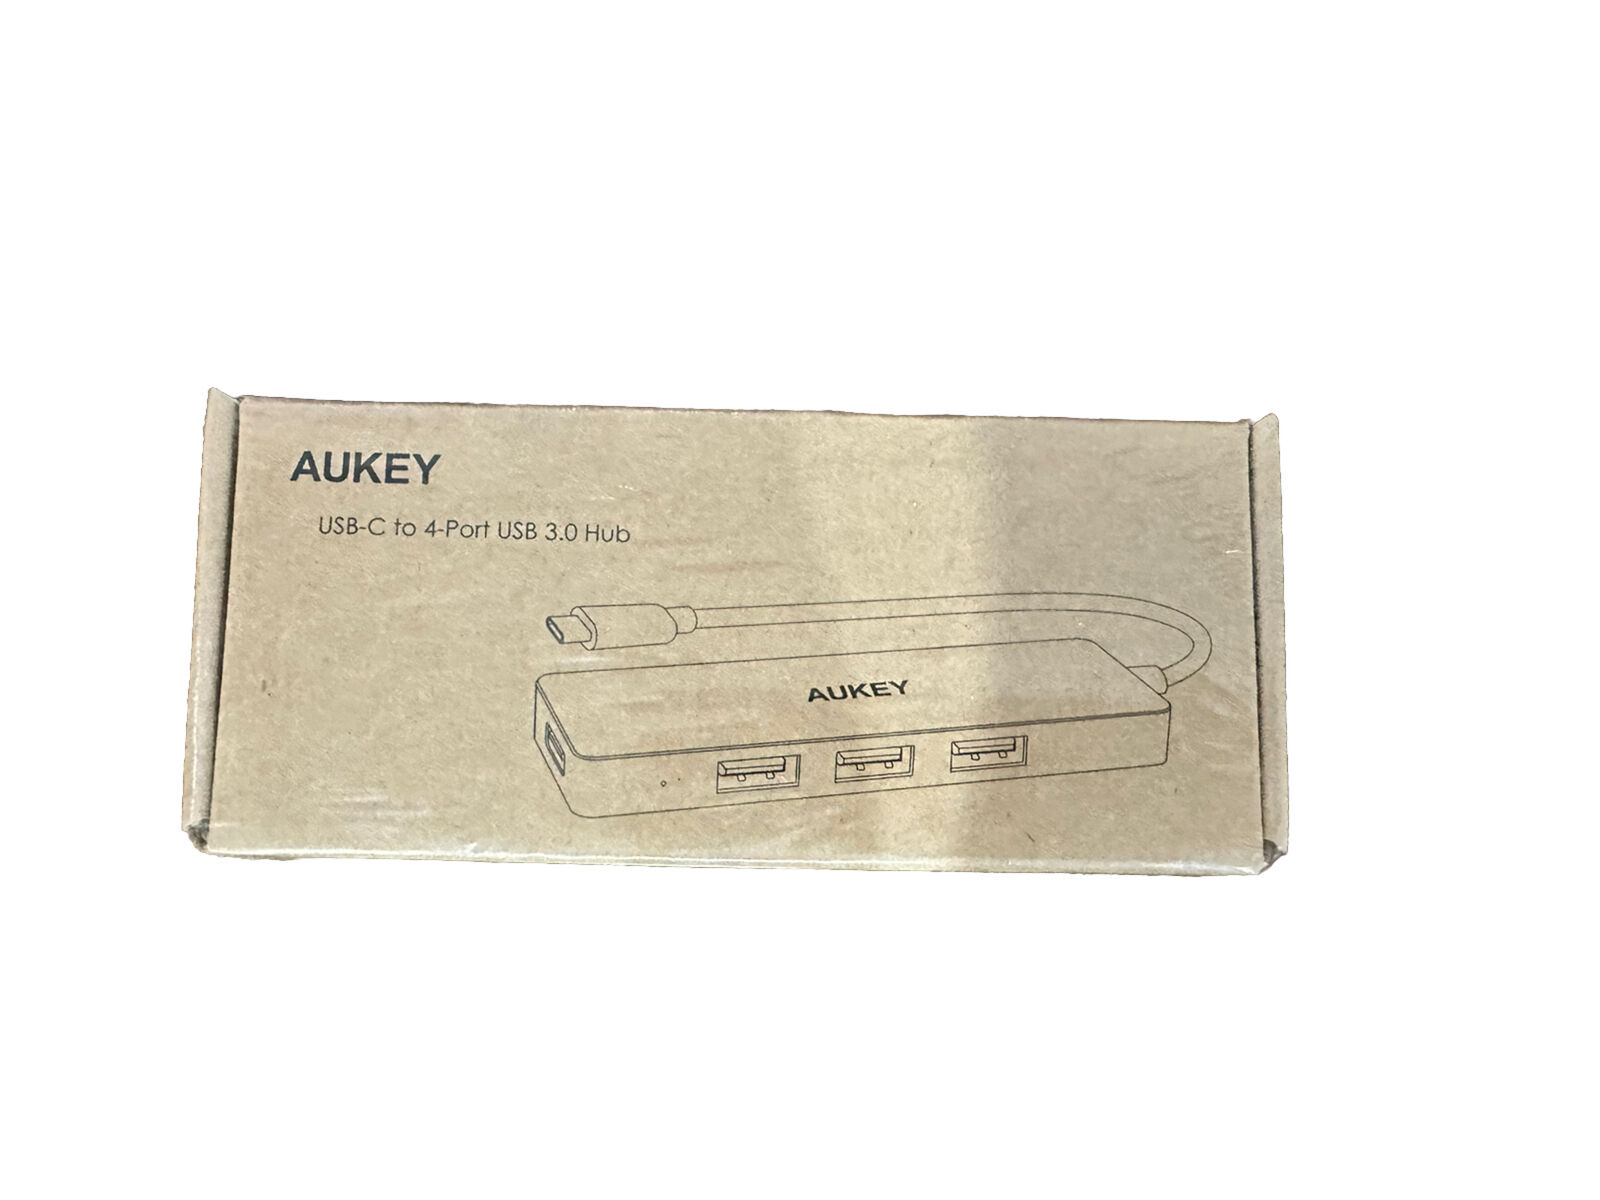 Aukey USB-C 4 ports USB 3.0 Hub - Black / BRAND NEW SEALED